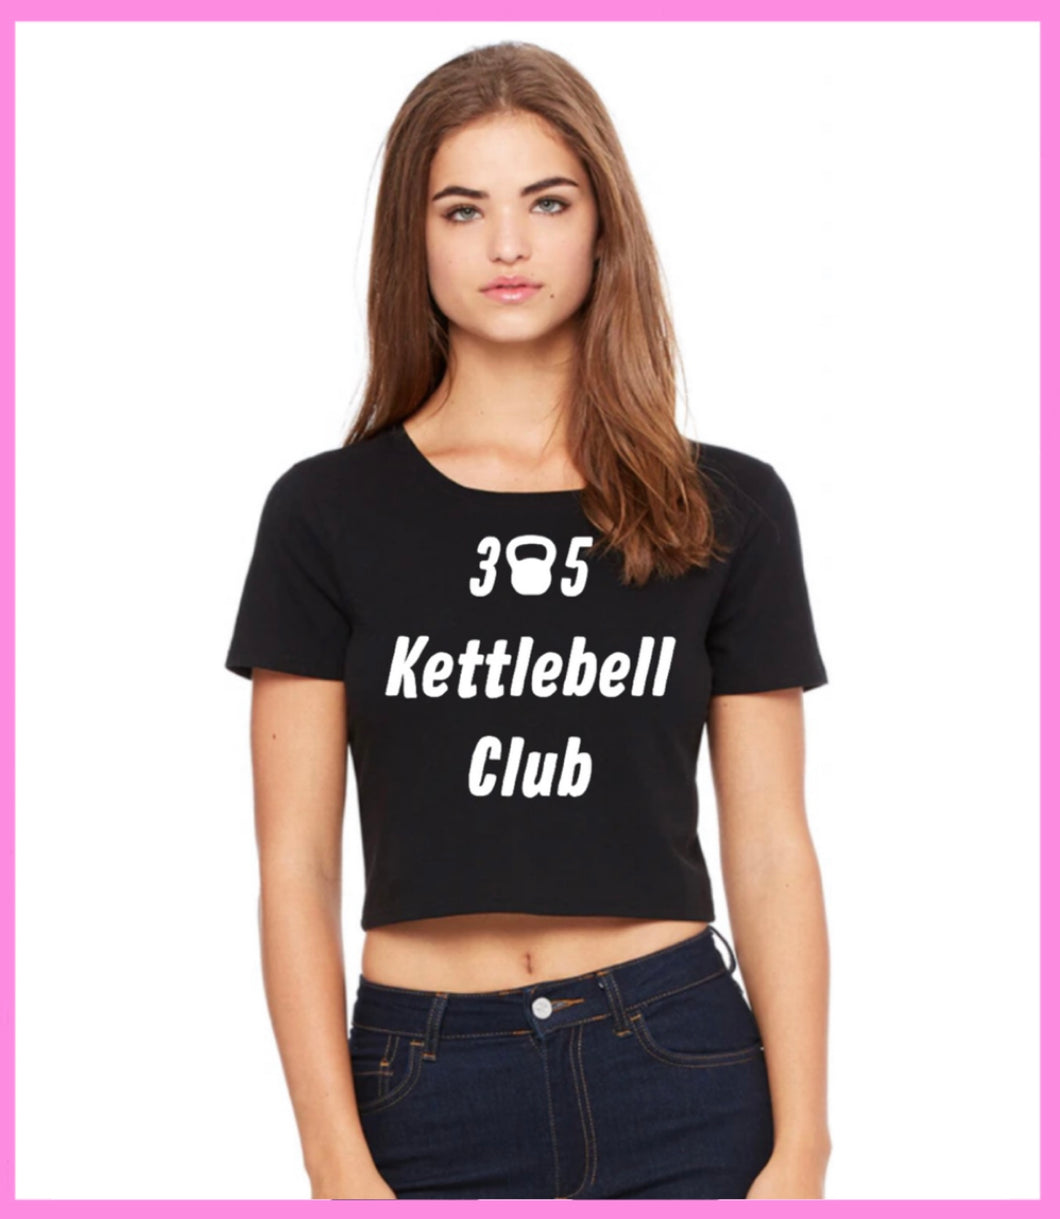 305 Kettlebell Club Women's Crop Top